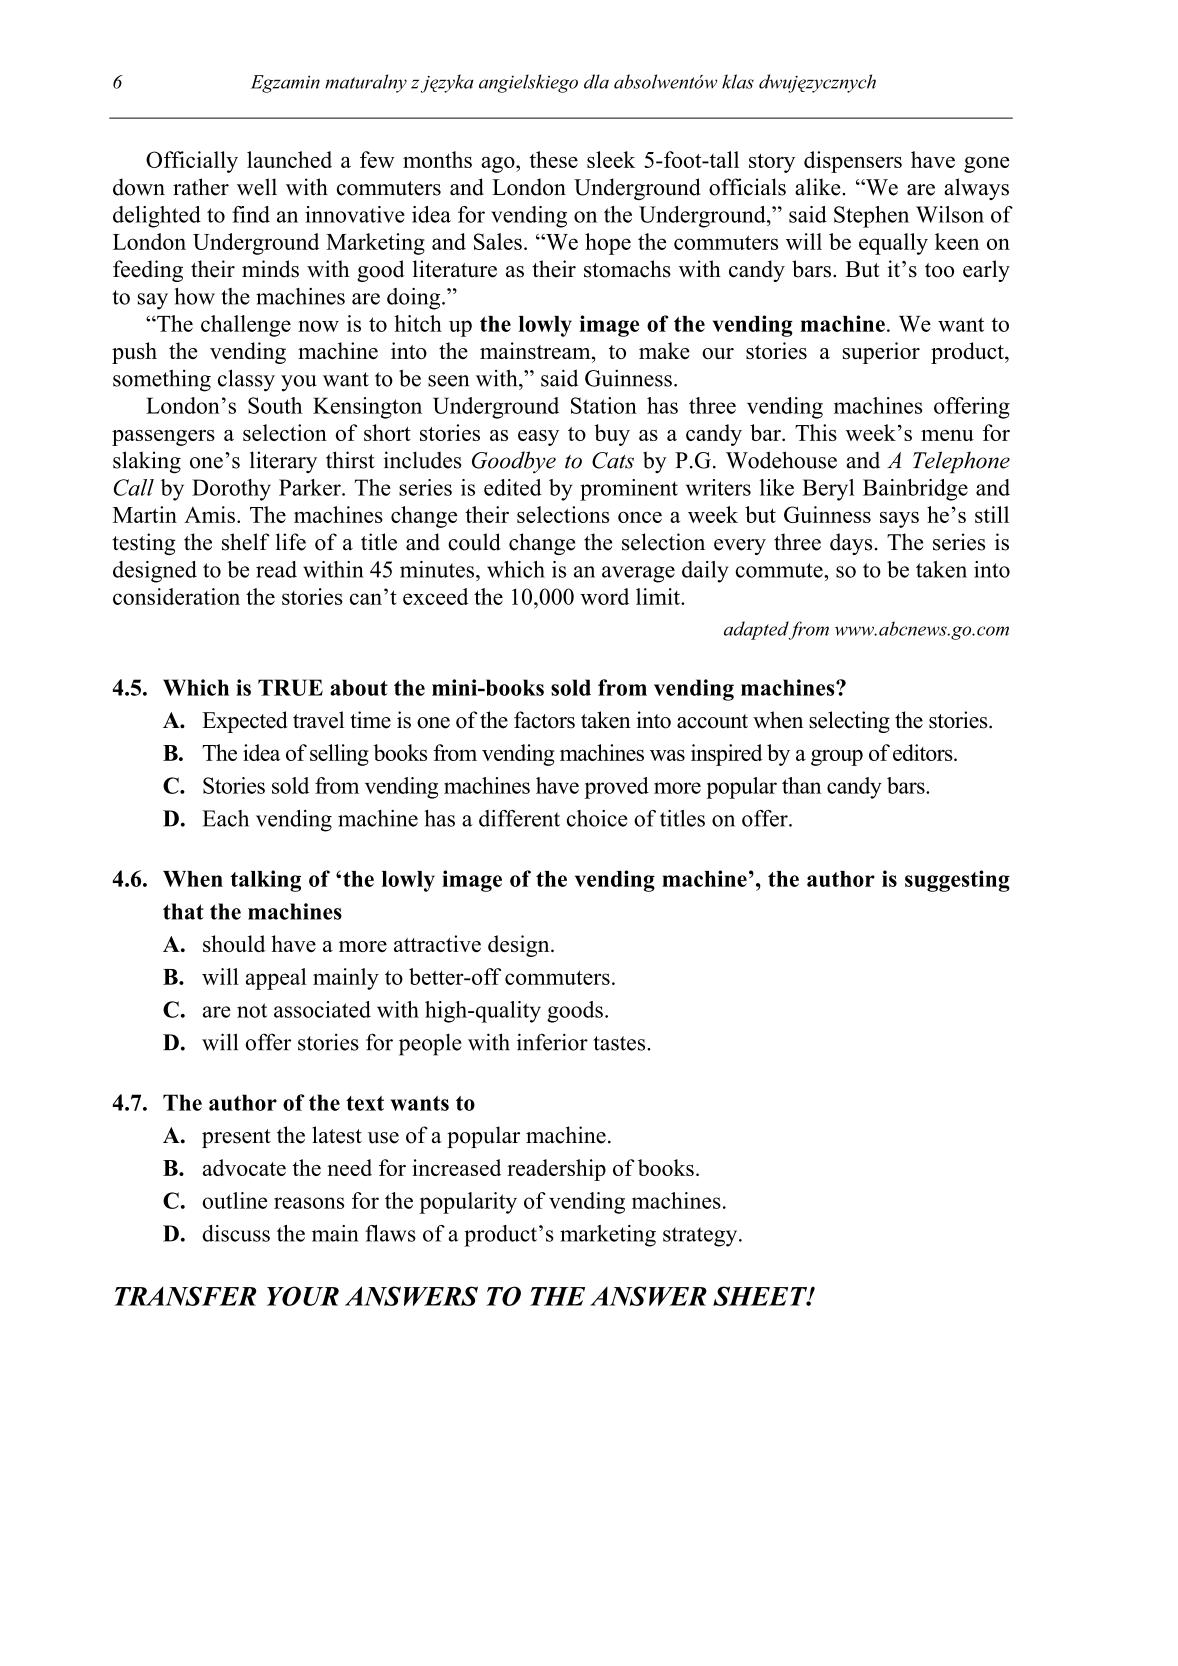 pytania-jezyk-angielski-dla-absolwentow-klas-dwujezycznych-matura-2014-str.6